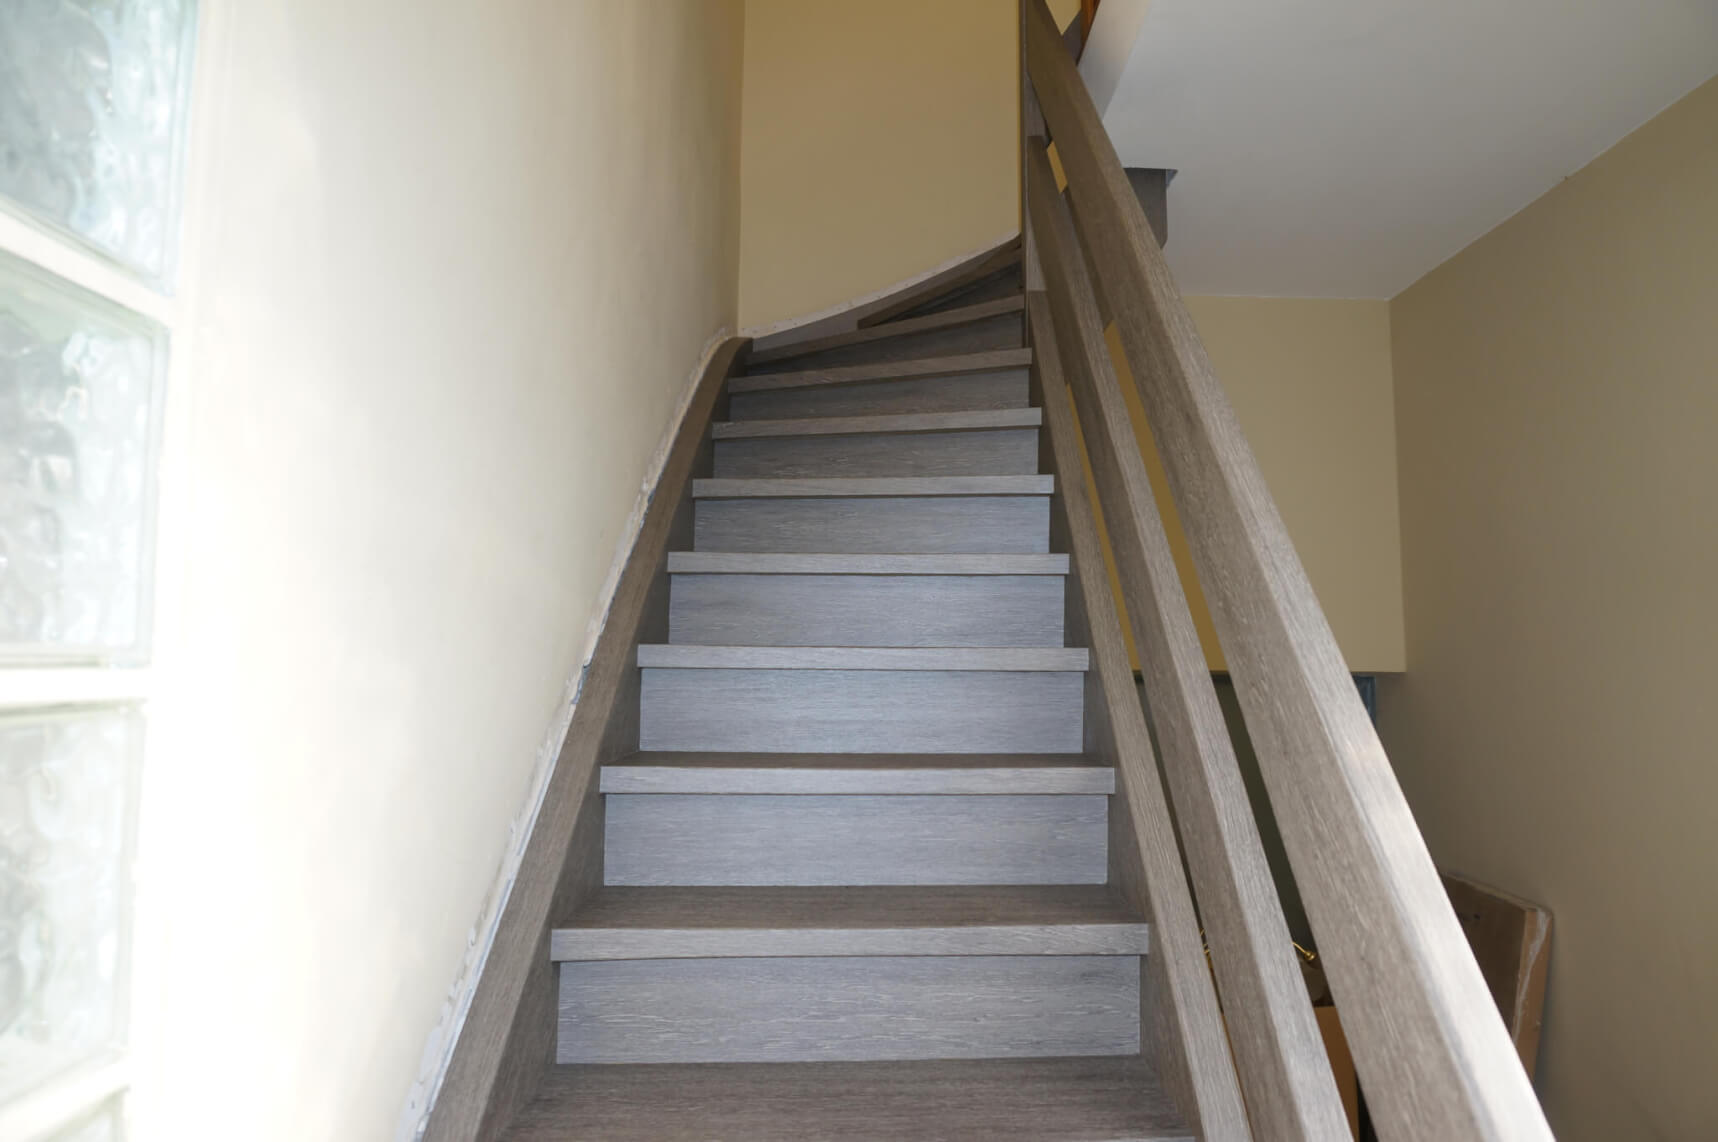 Escalera en la casa como decoración interior moderna nuevo revestimiento en aspecto de madera 01  